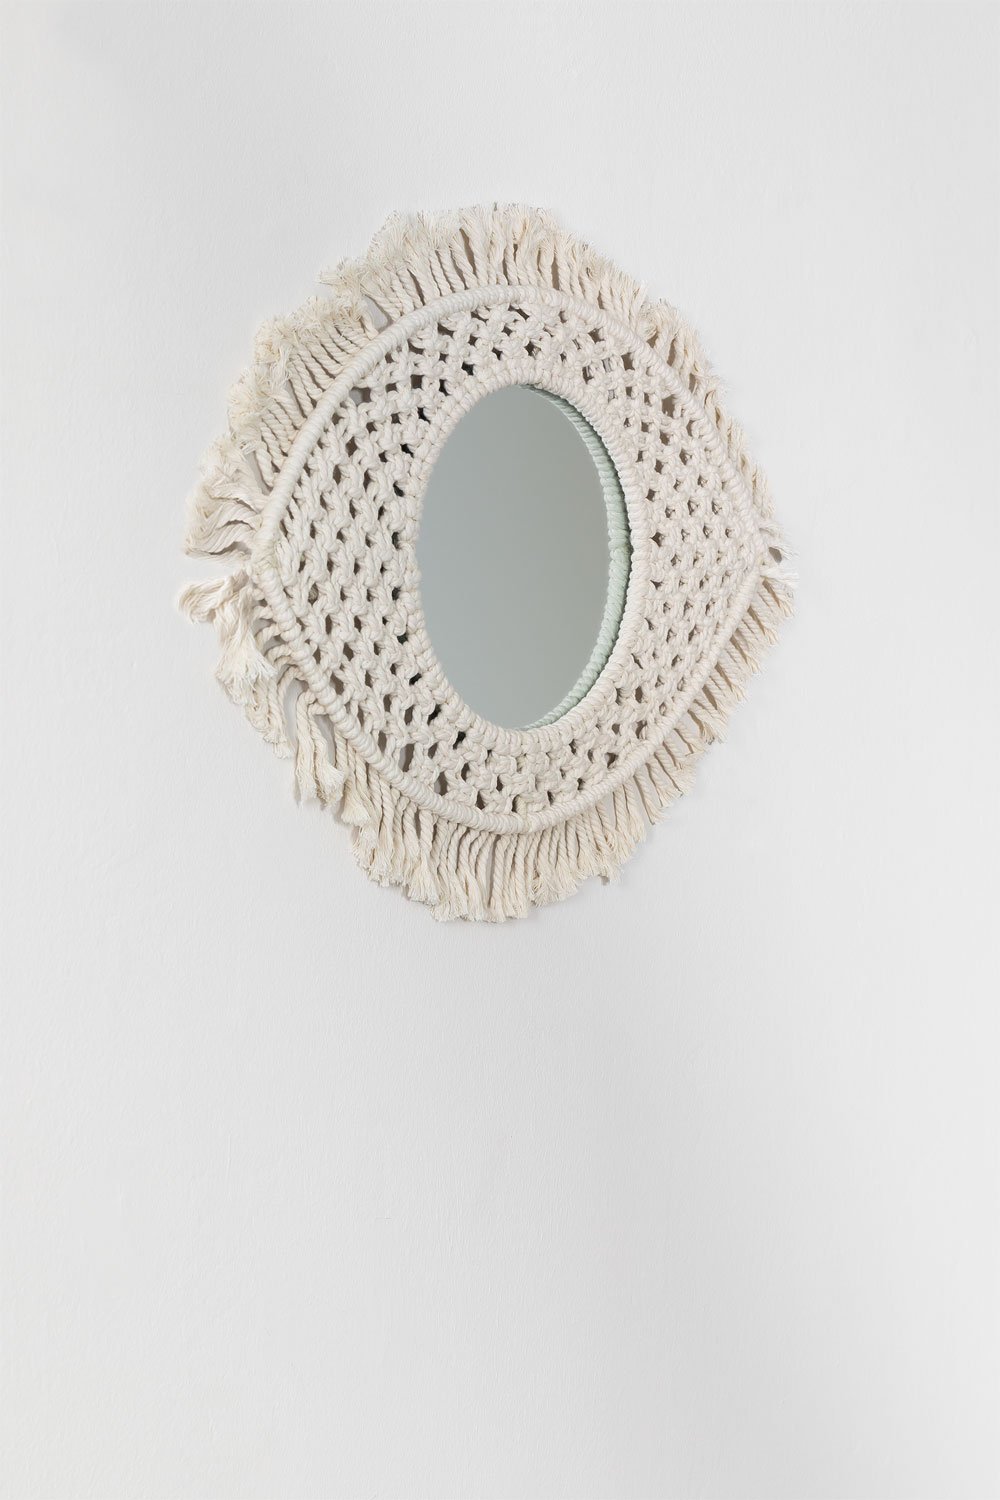 Specchio da parete in macramè Brice, immagine della galleria 2